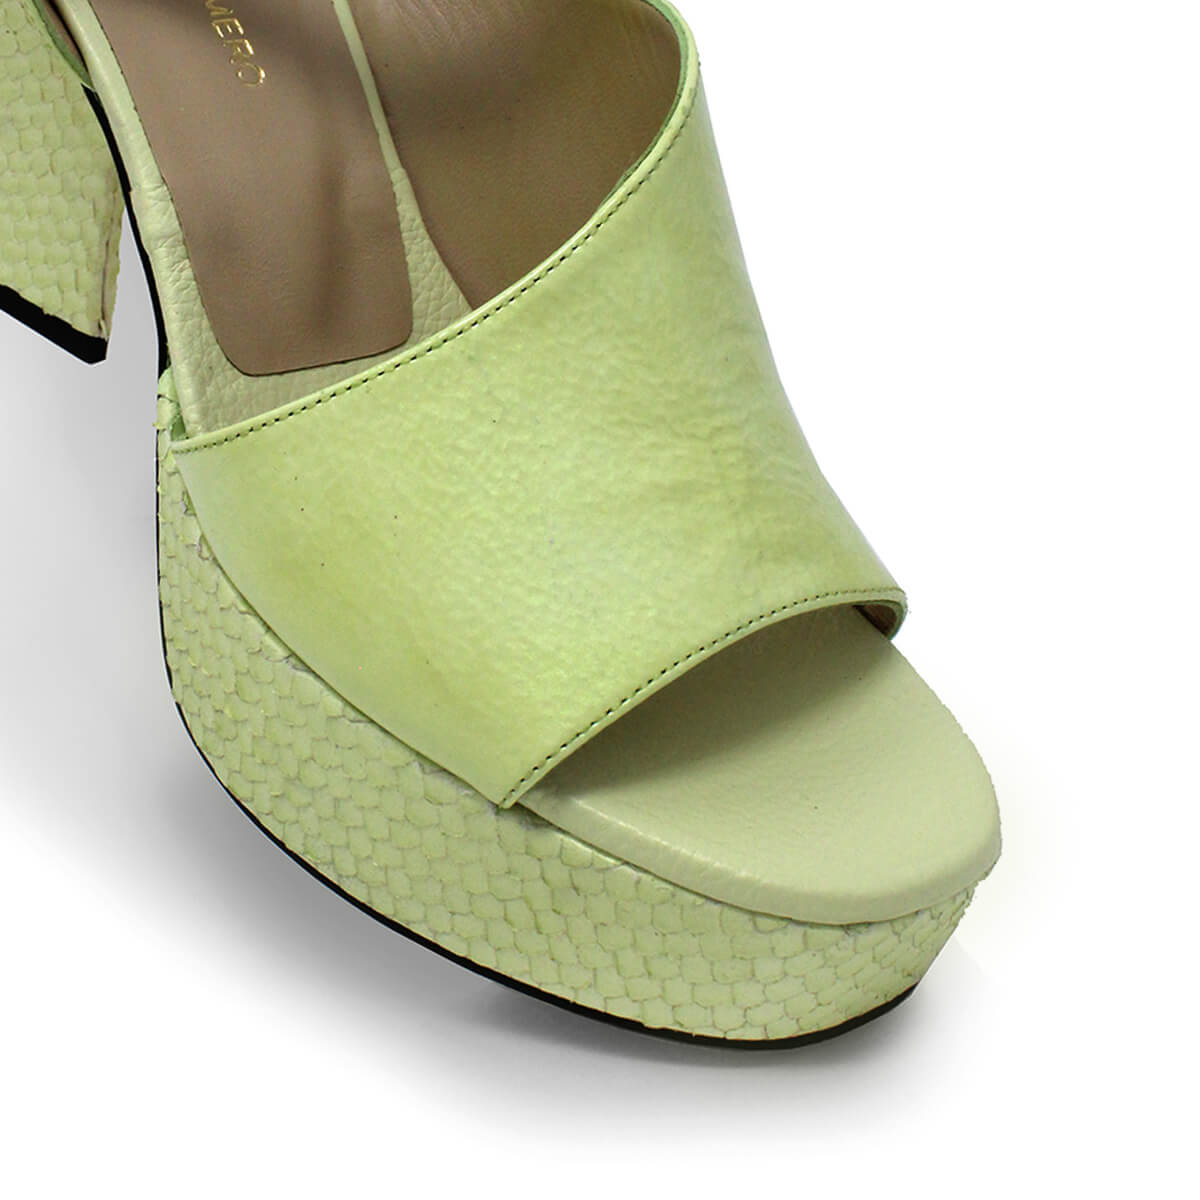 KIANA 95 - Charol Verde Claro Regina Romero Zapato Sandalia Plataforma Tacon Alto Para Dama en Piel